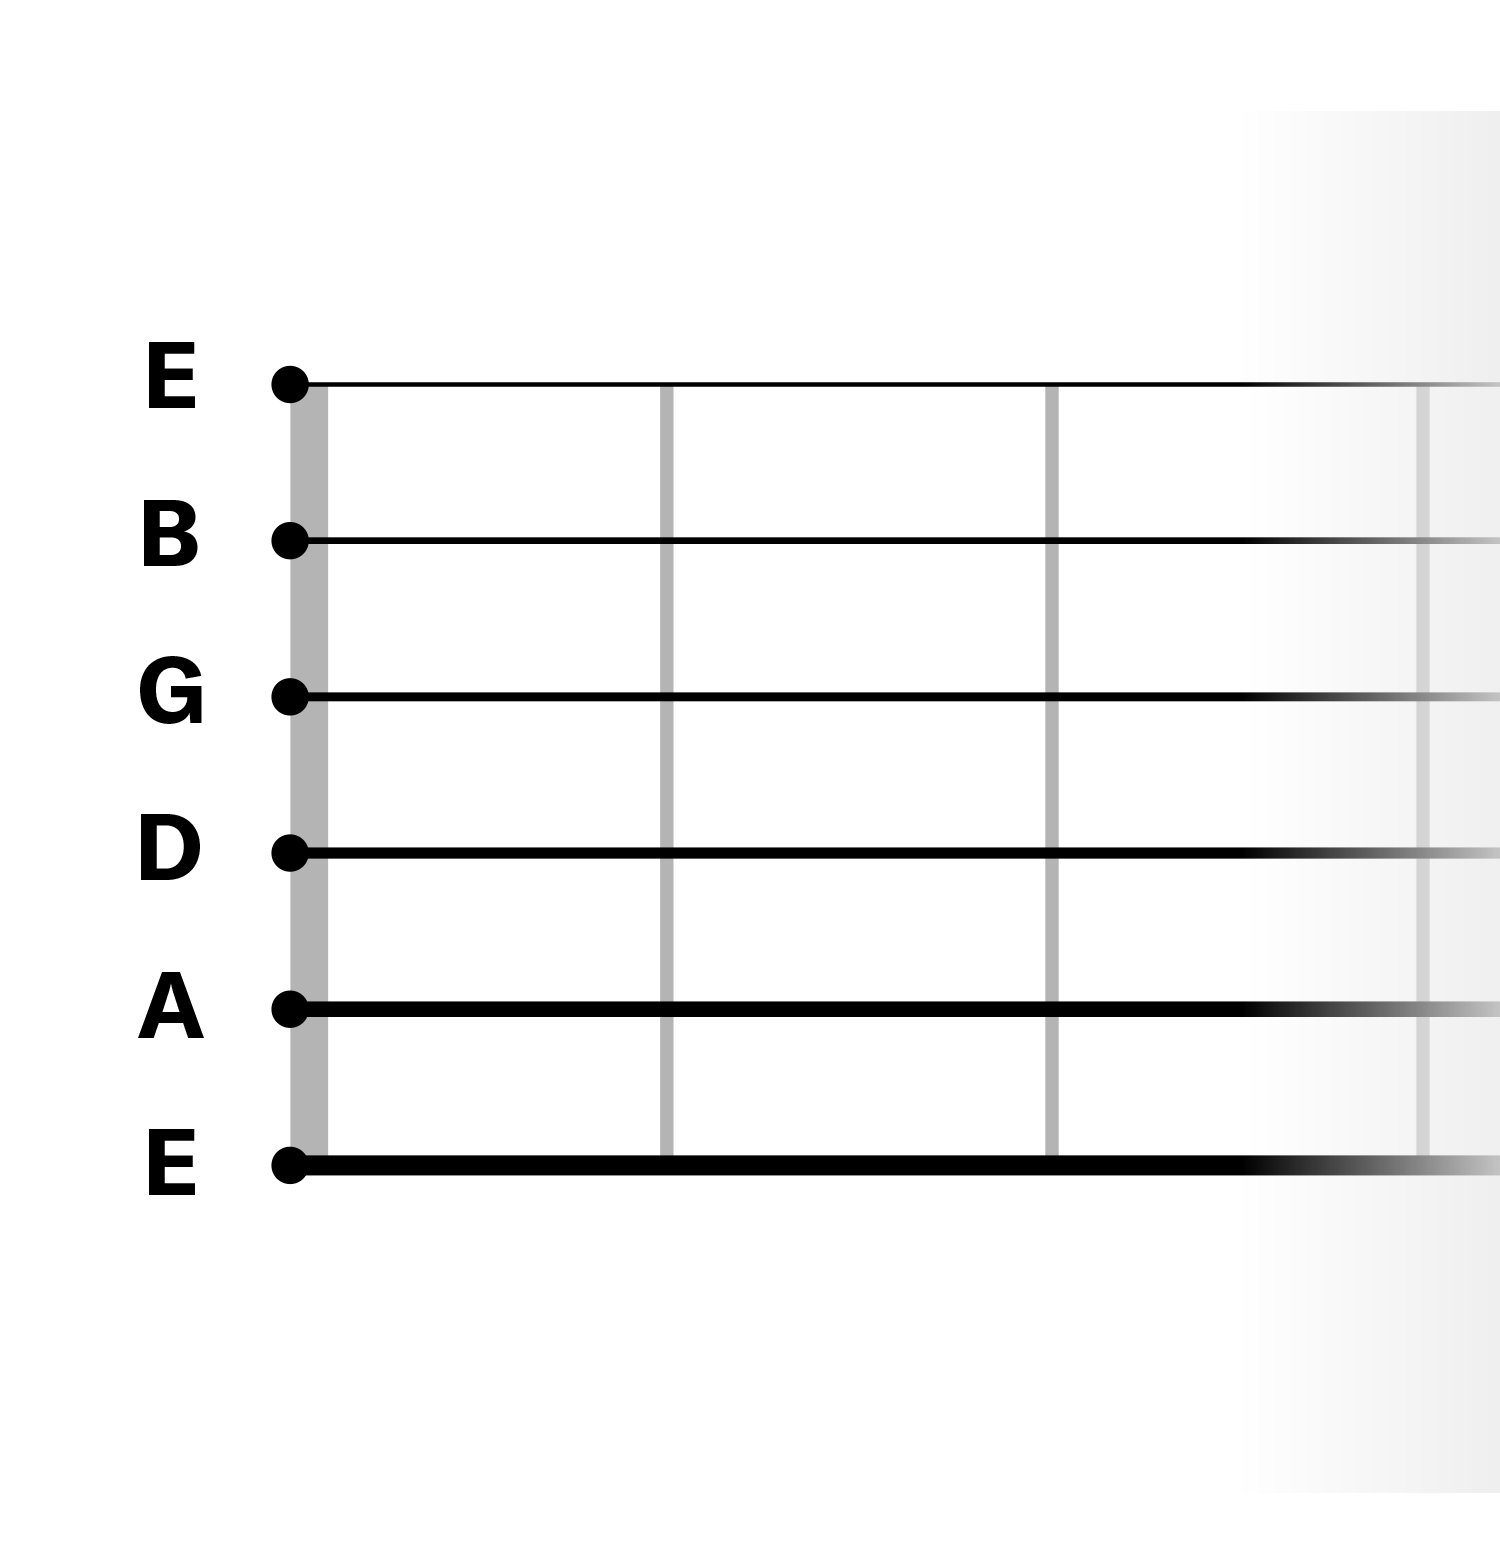 labeled guitar string diagram E-A-D-G-B-E